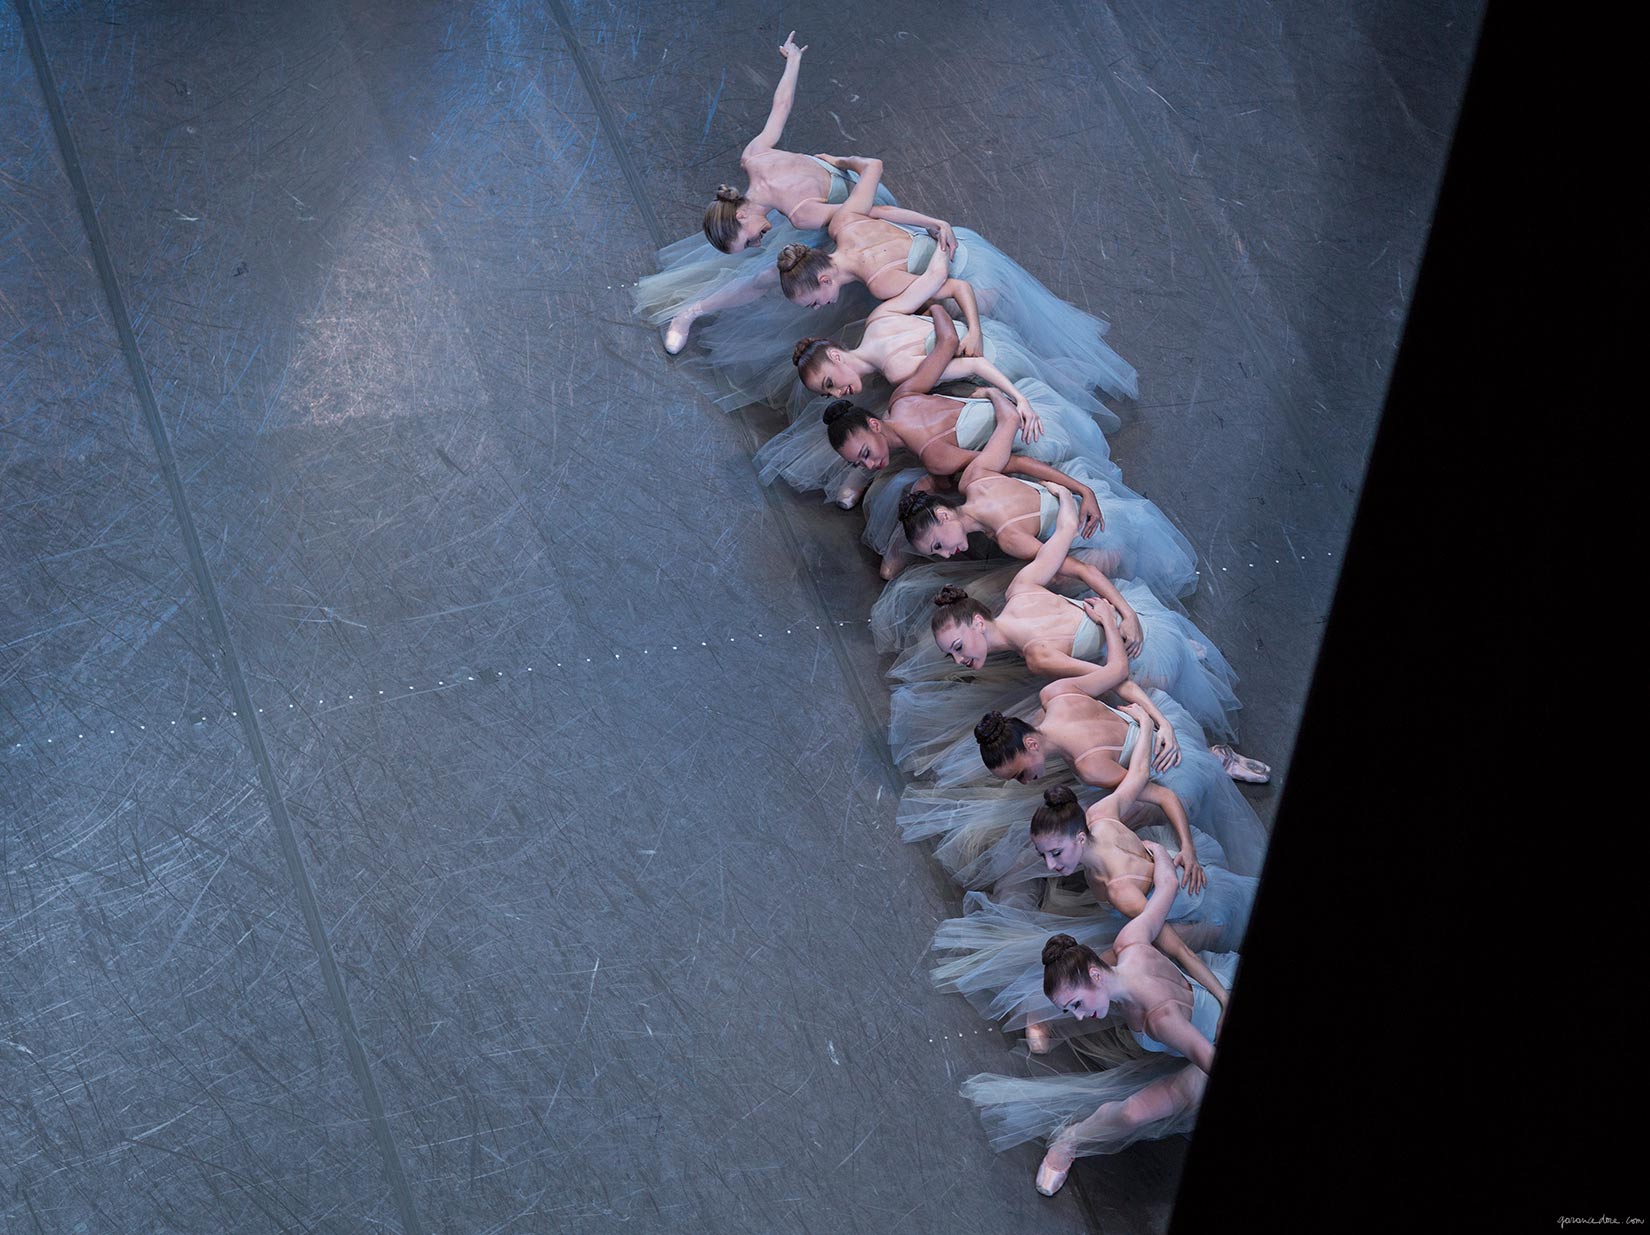 nyc ballet part 2 garance dore photos